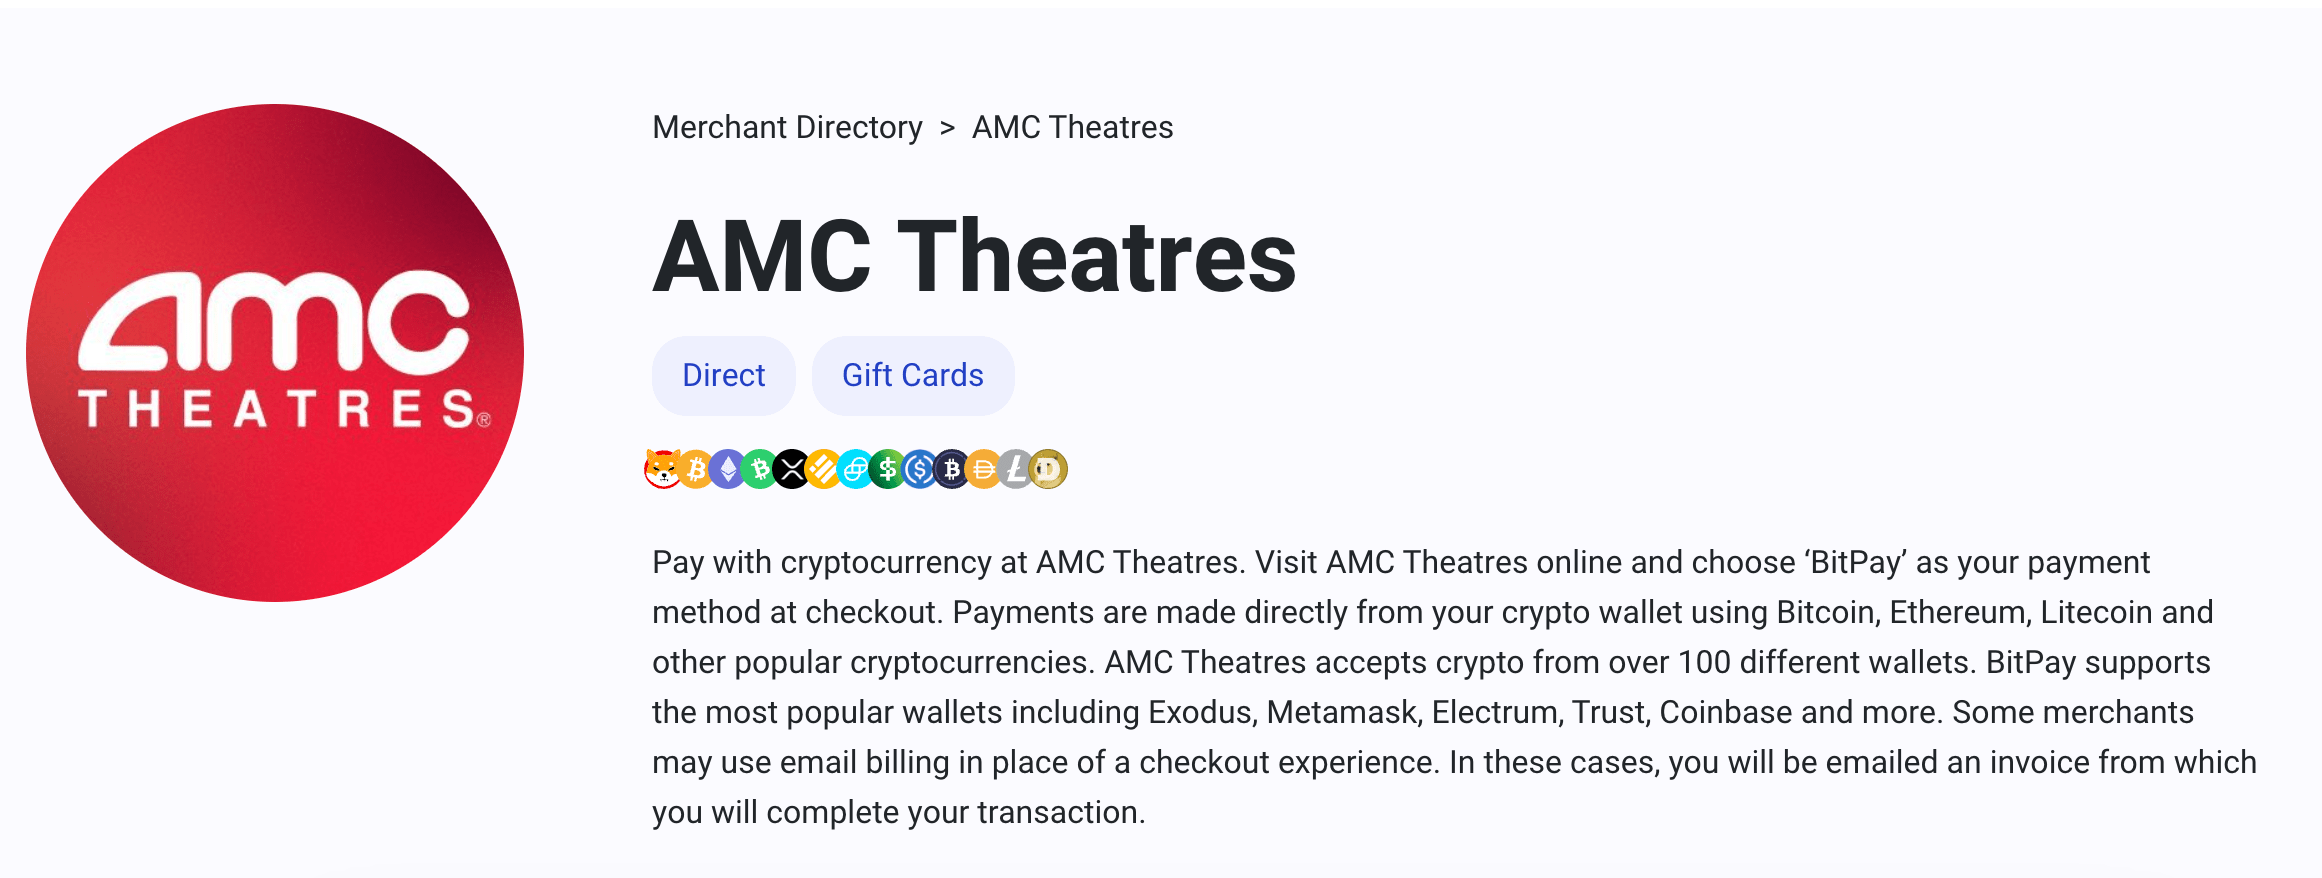 AMC Theatres crypto